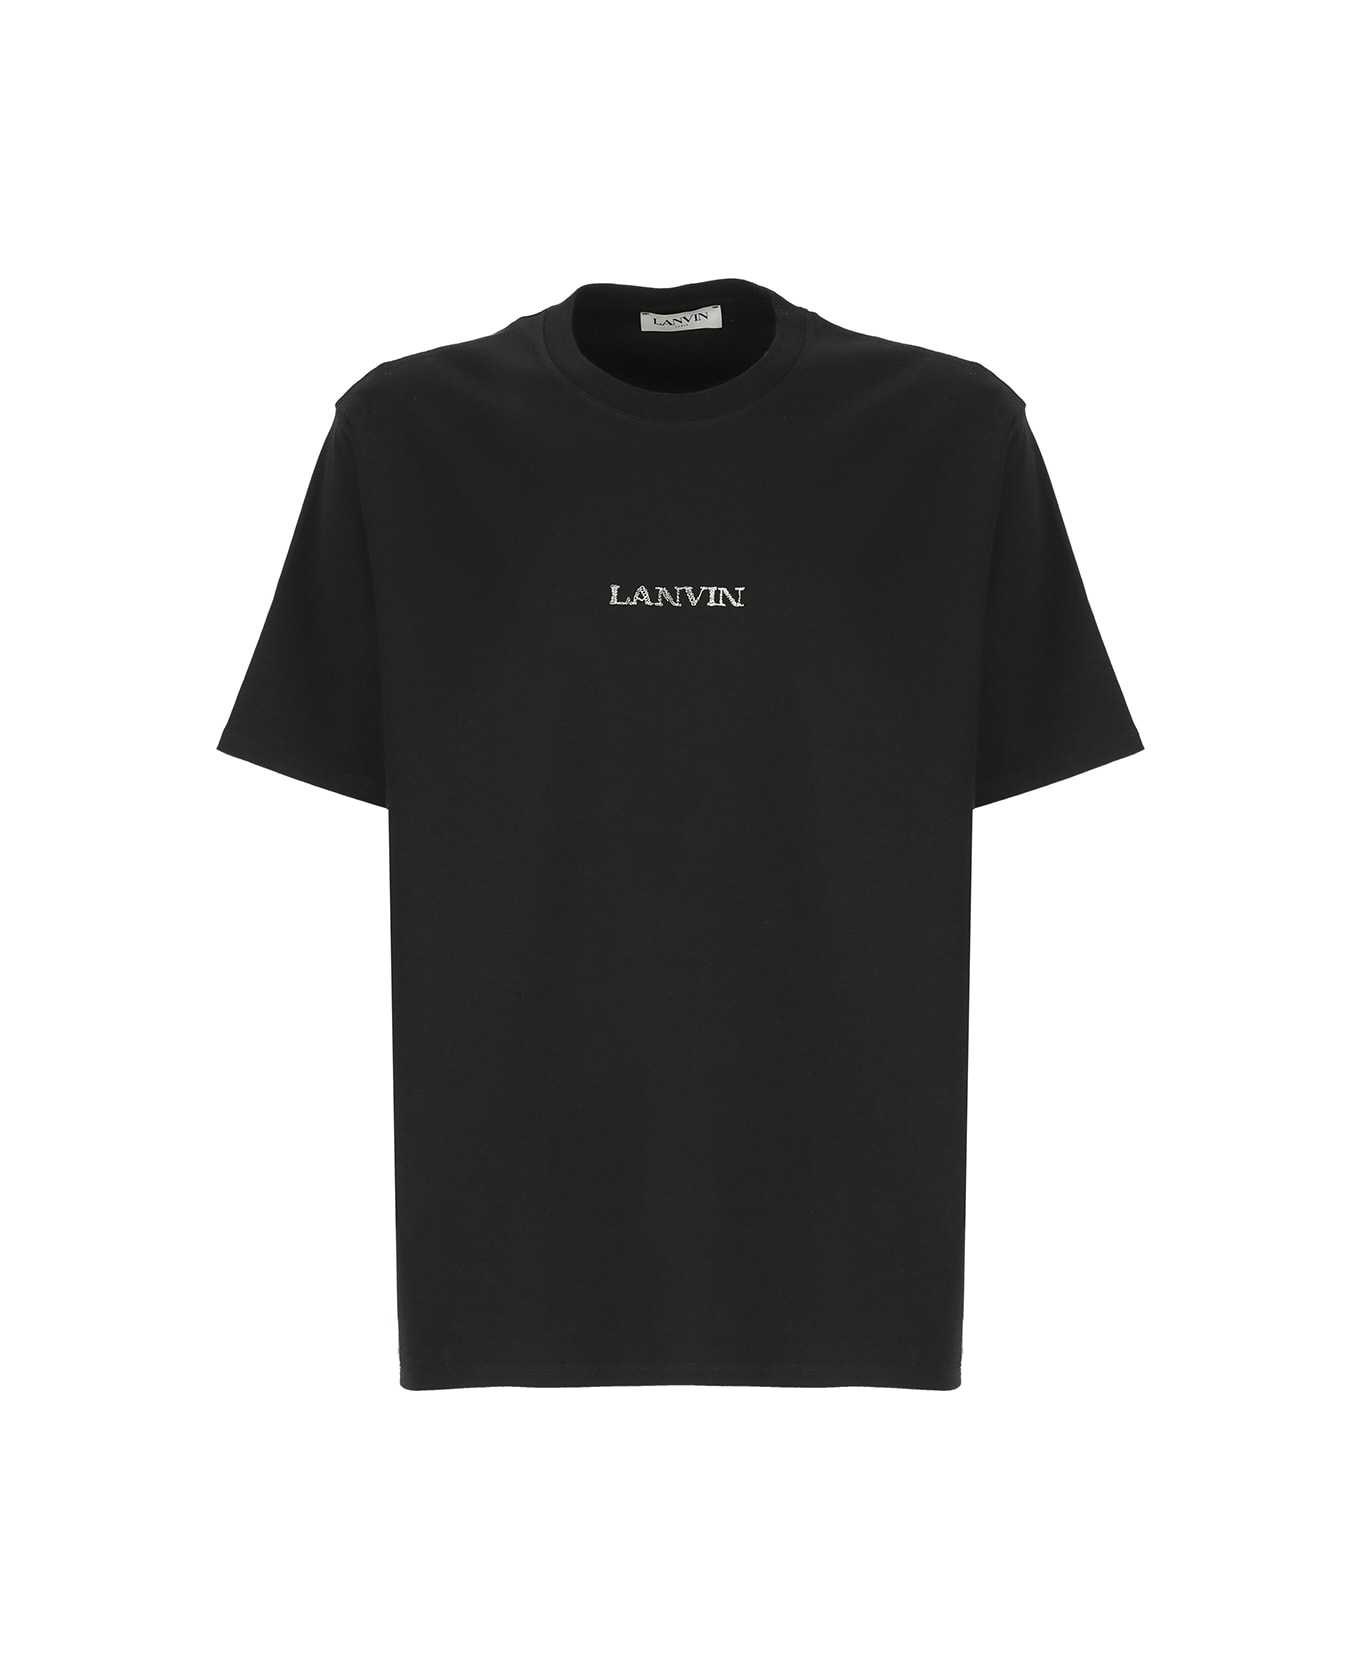 Lanvin Cotton T-shirt - Black シャツ